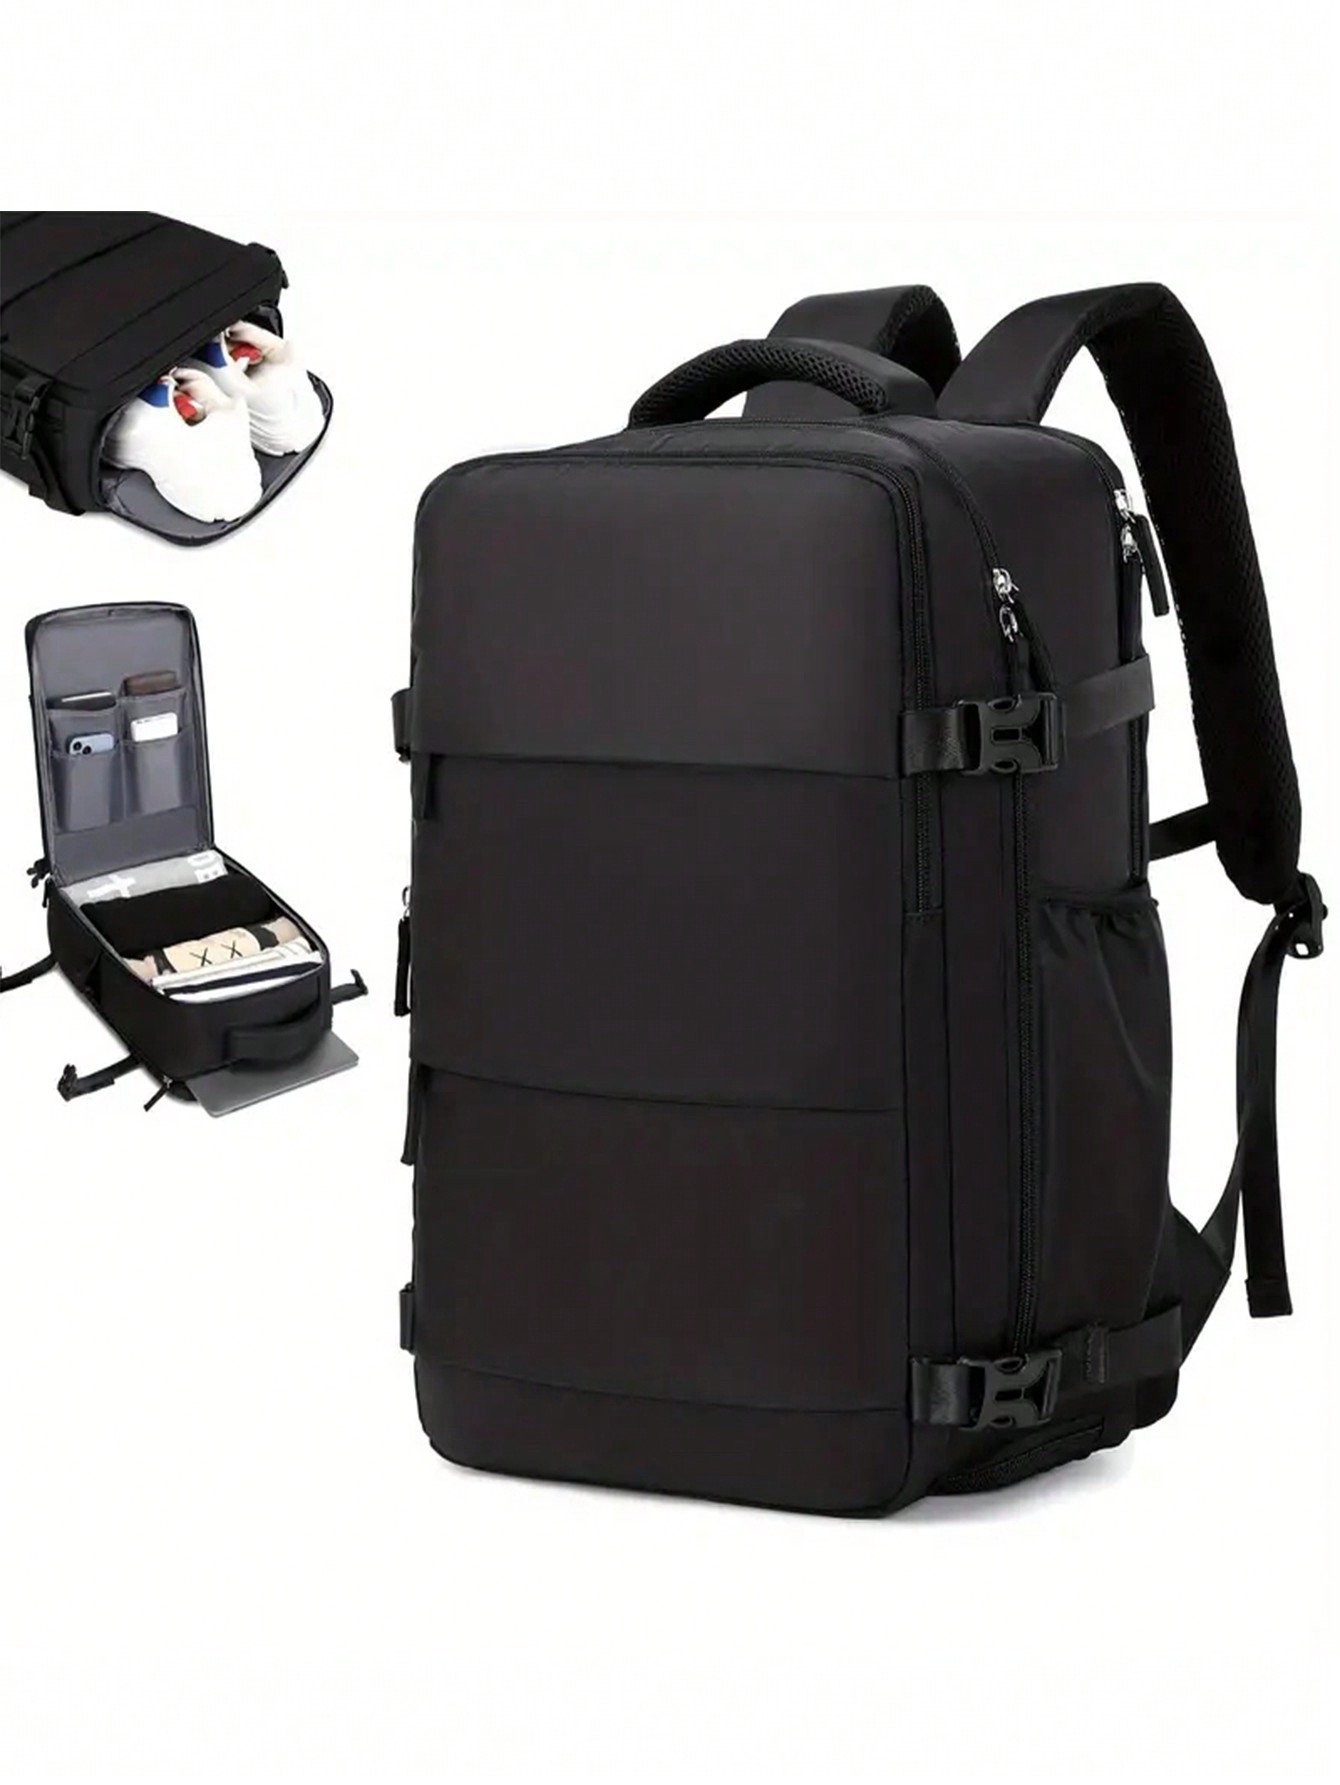 Розовая многофункциональная дорожная сумка большой емкости с молнией сверху, черный рюкзак мужской для ноутбука 15 6 17 дюймов с usb портом для зарядки и защитой от кражи